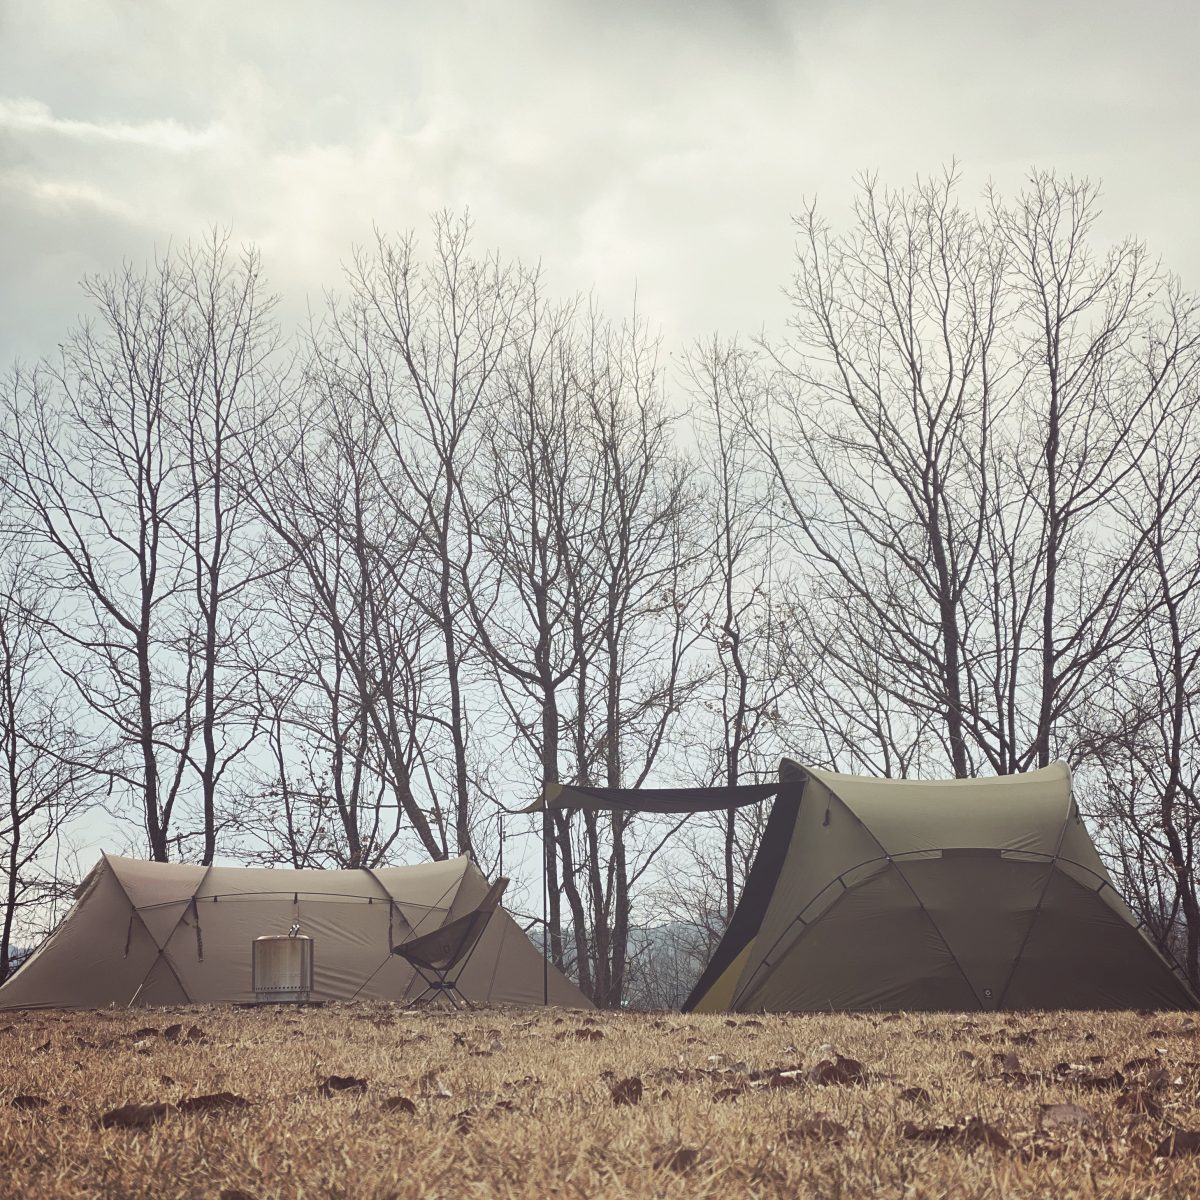 【インタビュー】今、流行のミニマムスタイルでシンプルに楽しむキャンプ。